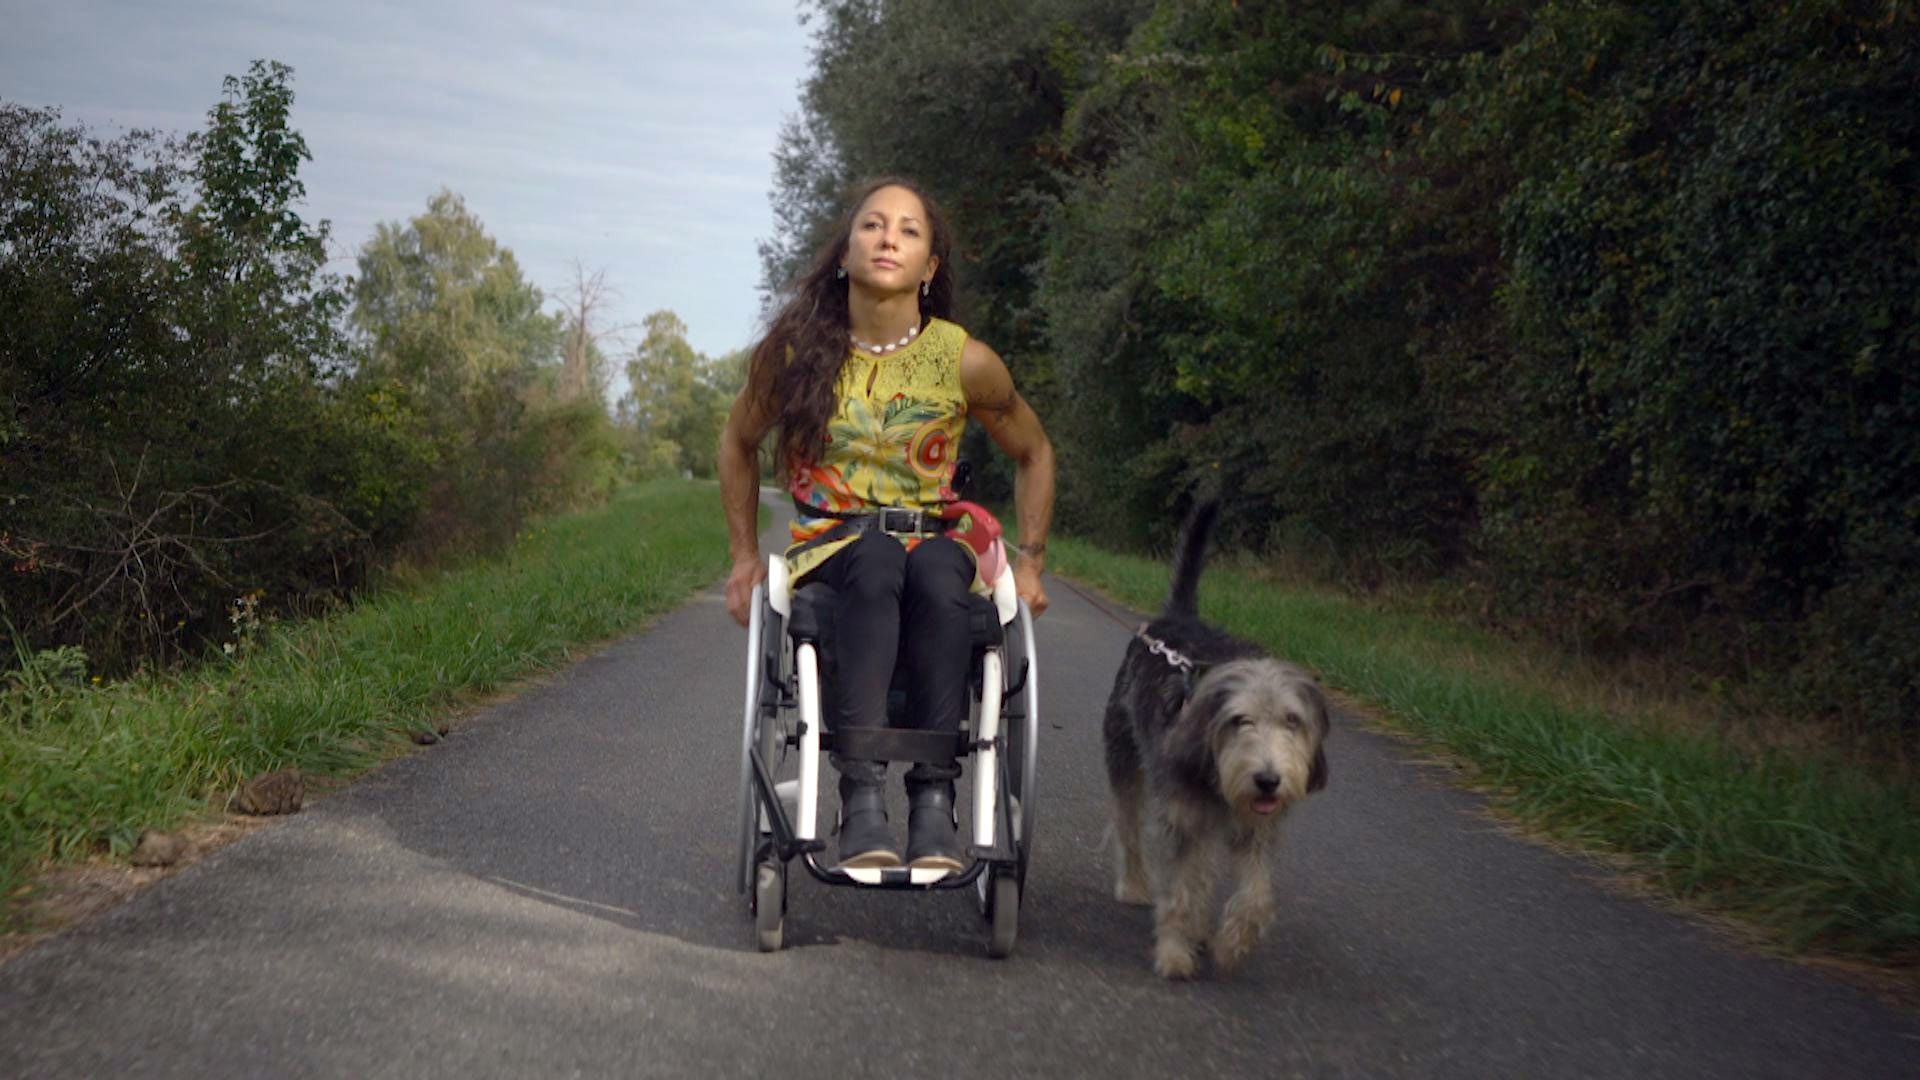 Extrait du documentaire "Jeunes et paraplégiques". Silke pose fièrement en fauteuil roulant avec son chien.